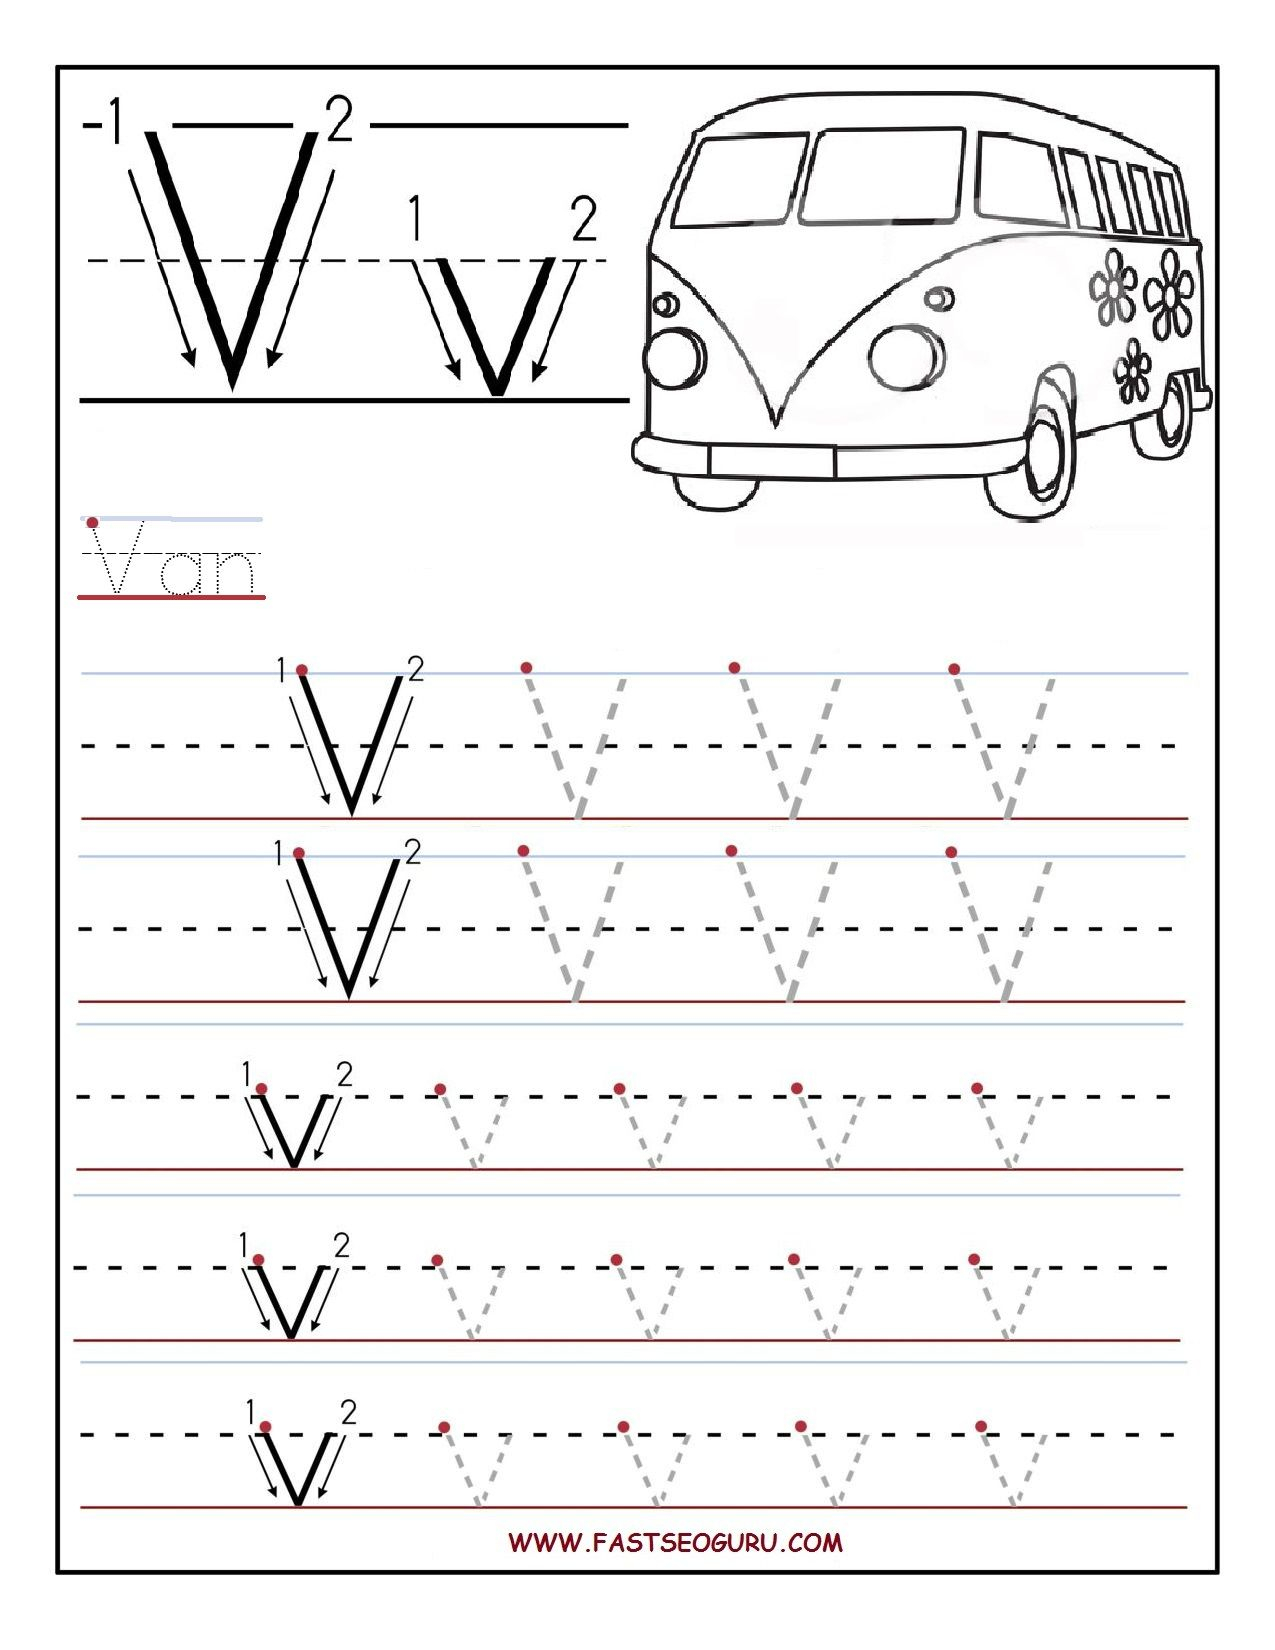 Printable Letter V Tracing Worksheets For Preschool with regard to Letter V Worksheets Free